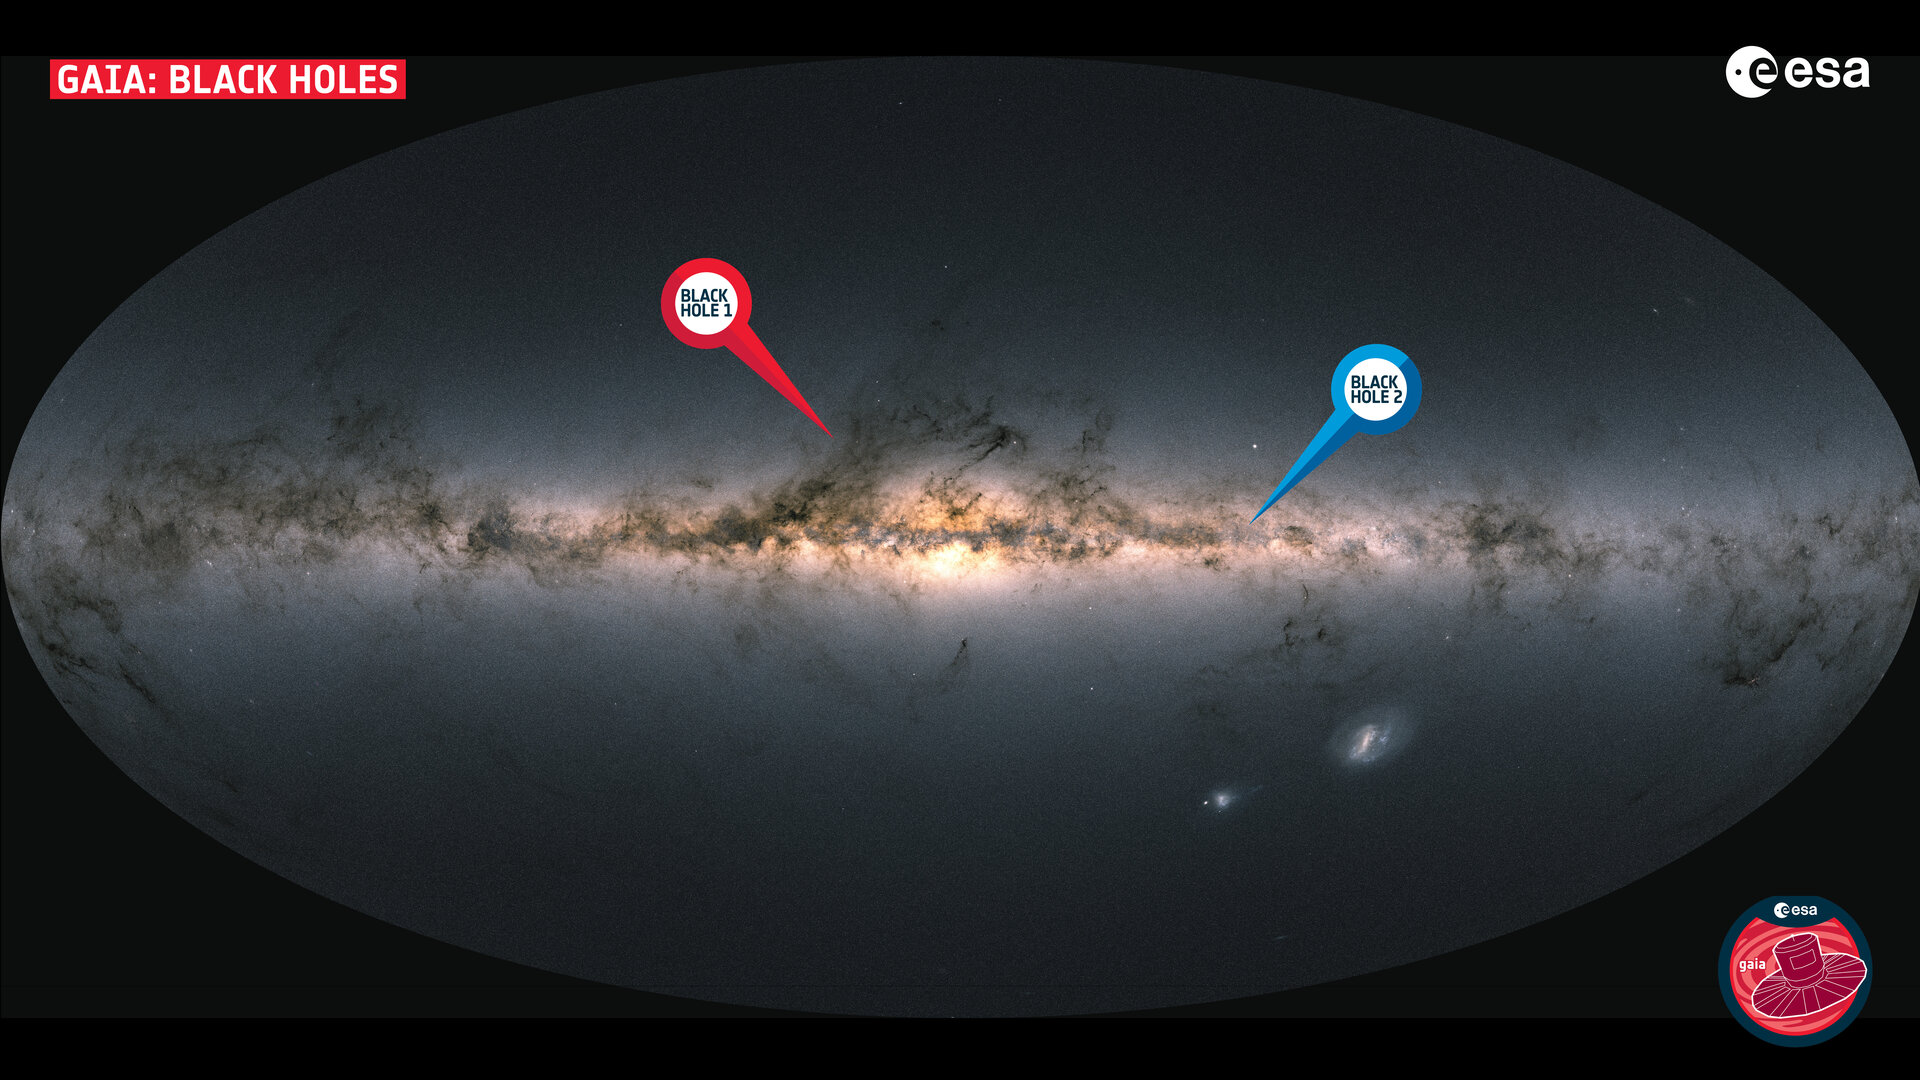 Carte de la Voie lactée, révélant les emplacements des trous noirs extrêmement proches Gaia BH1 et BH2